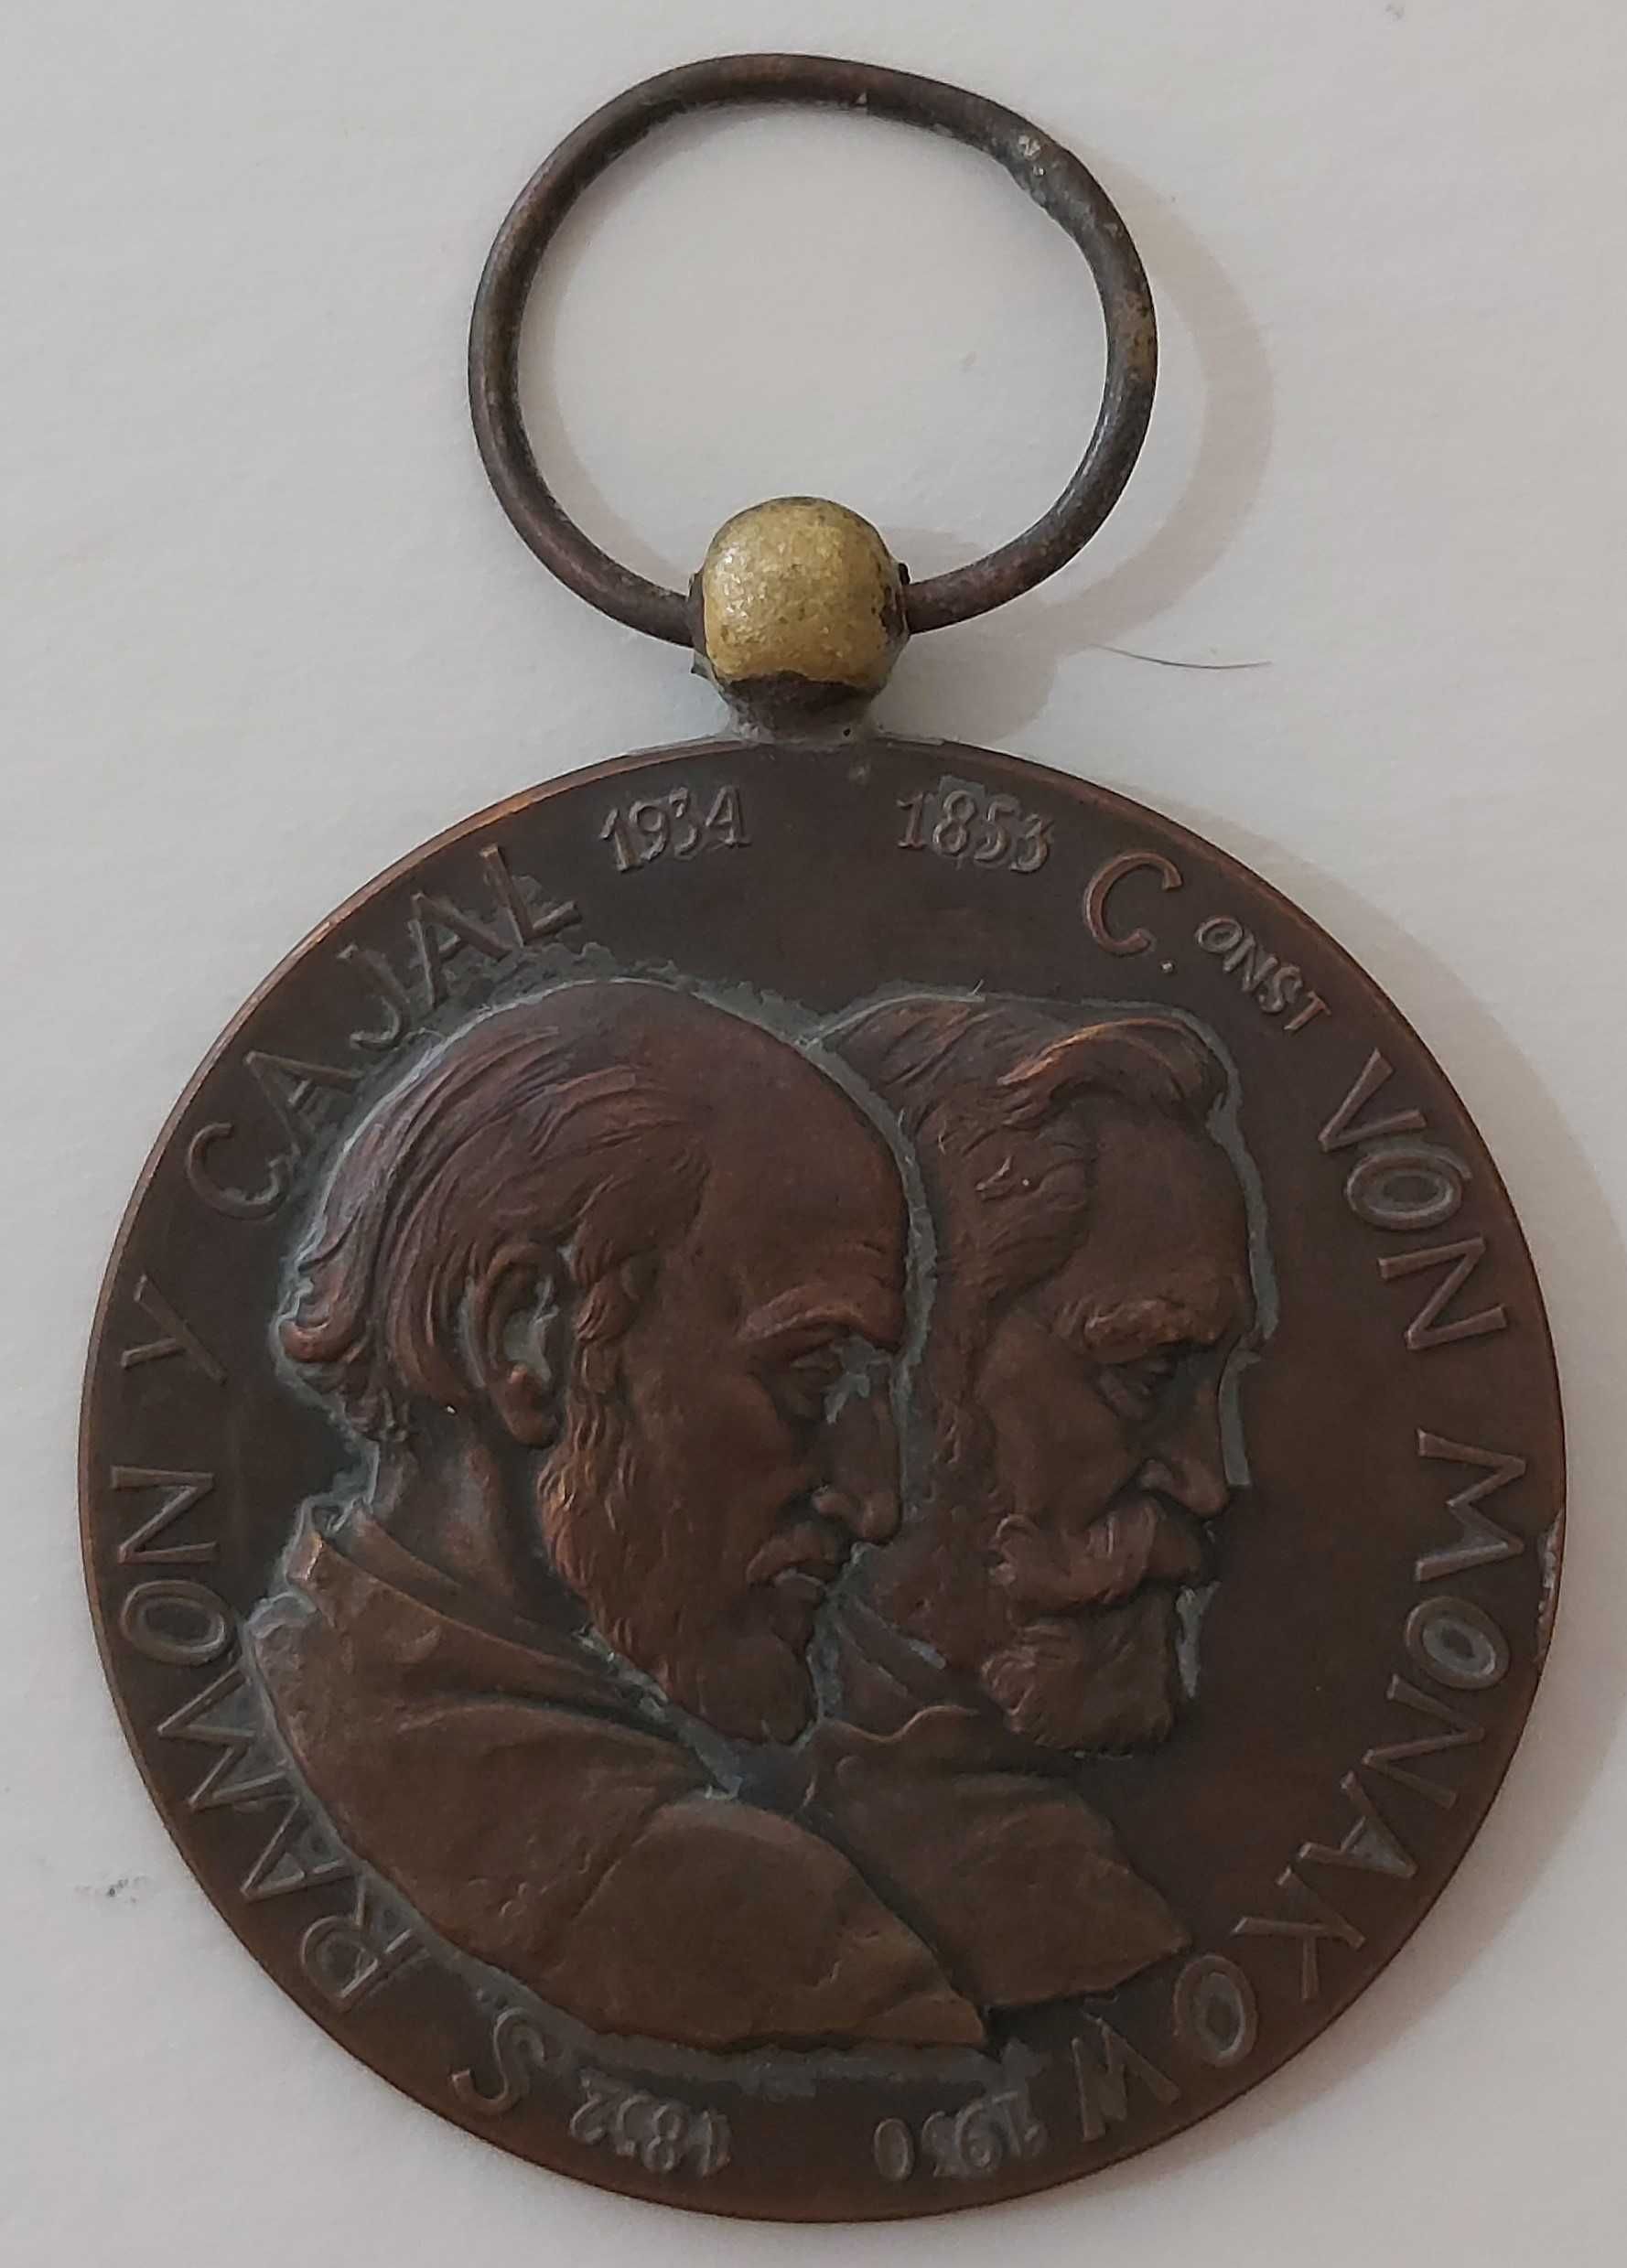 Medalha do V Congresso Internacional Neurologia Lisboa 1953